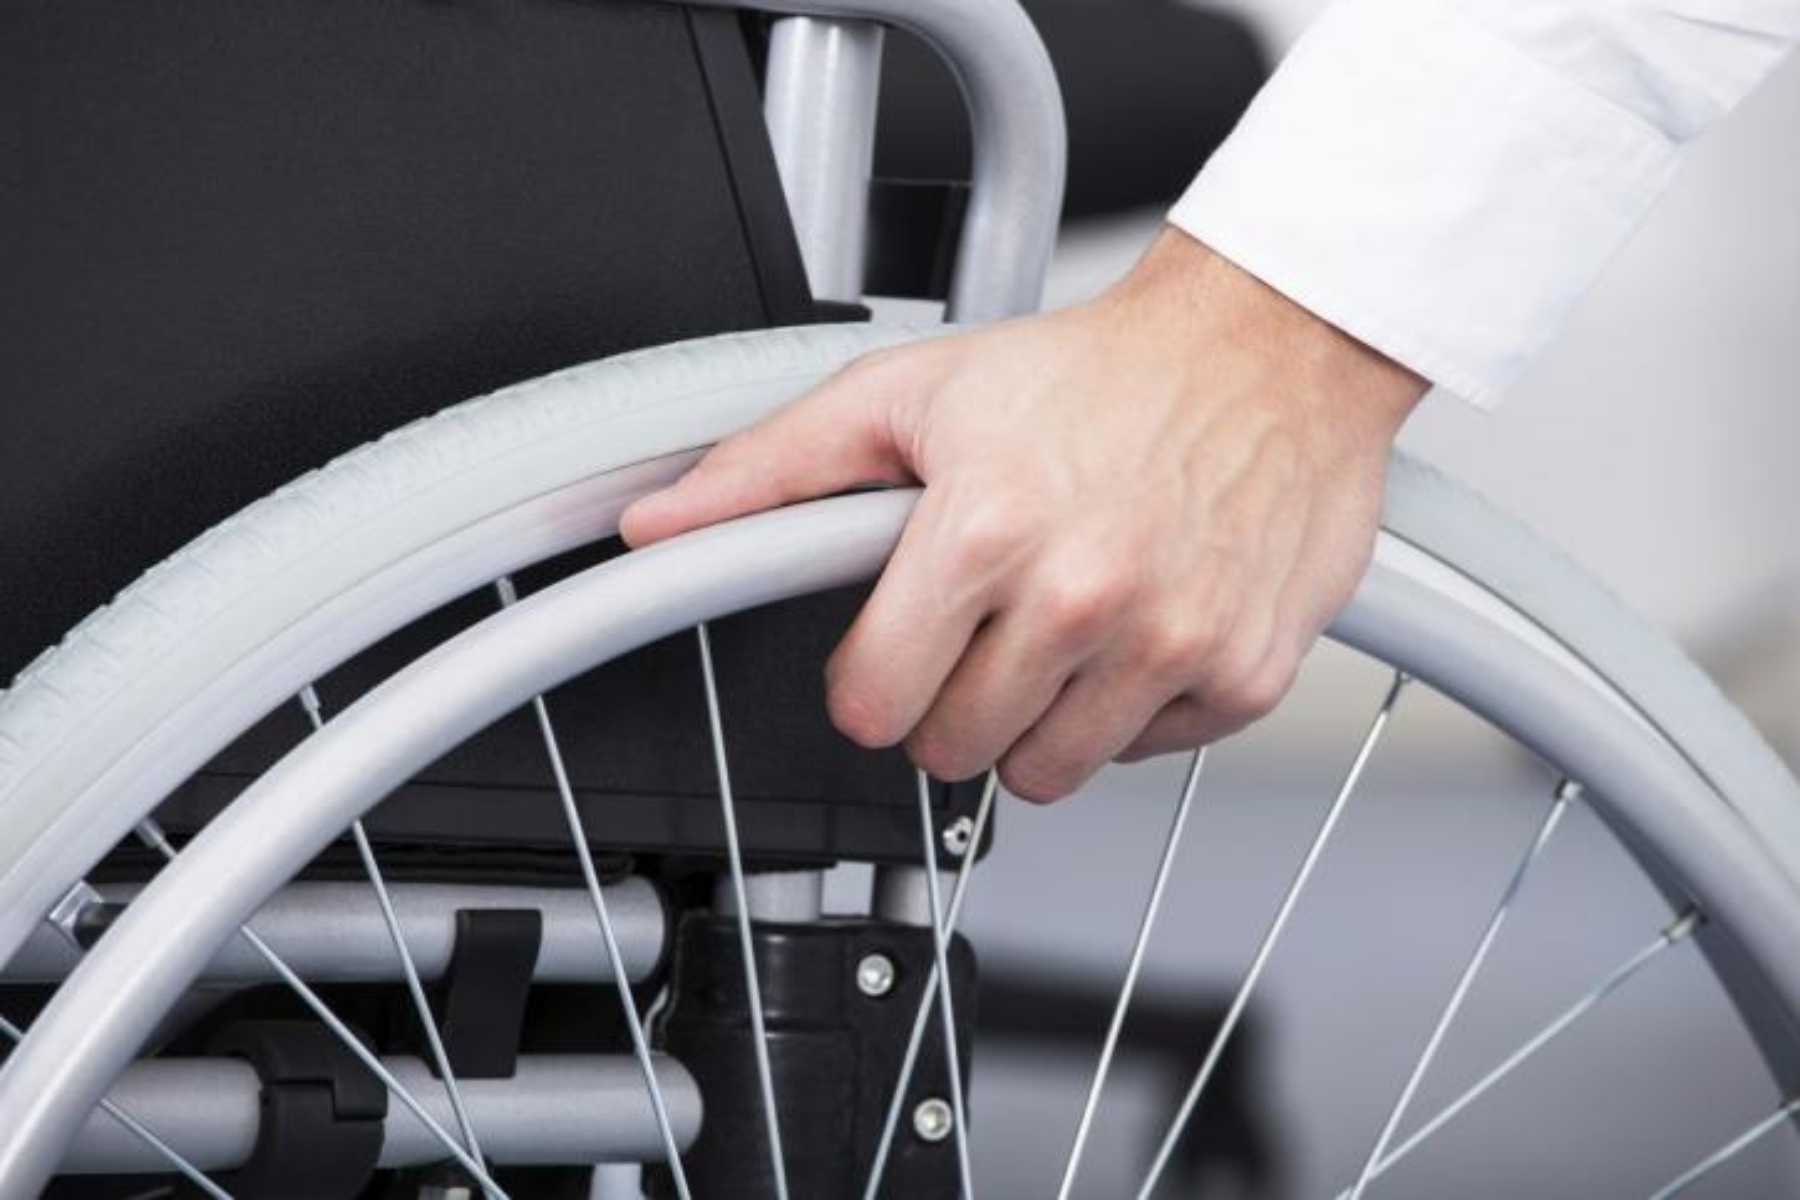 ΕΣΑμεΑ: Αυξήσεις σε εξωιδρυματικό & απολύτου αναπηρίας ζητά μετά την αύξηση του κατώτατου μισθού